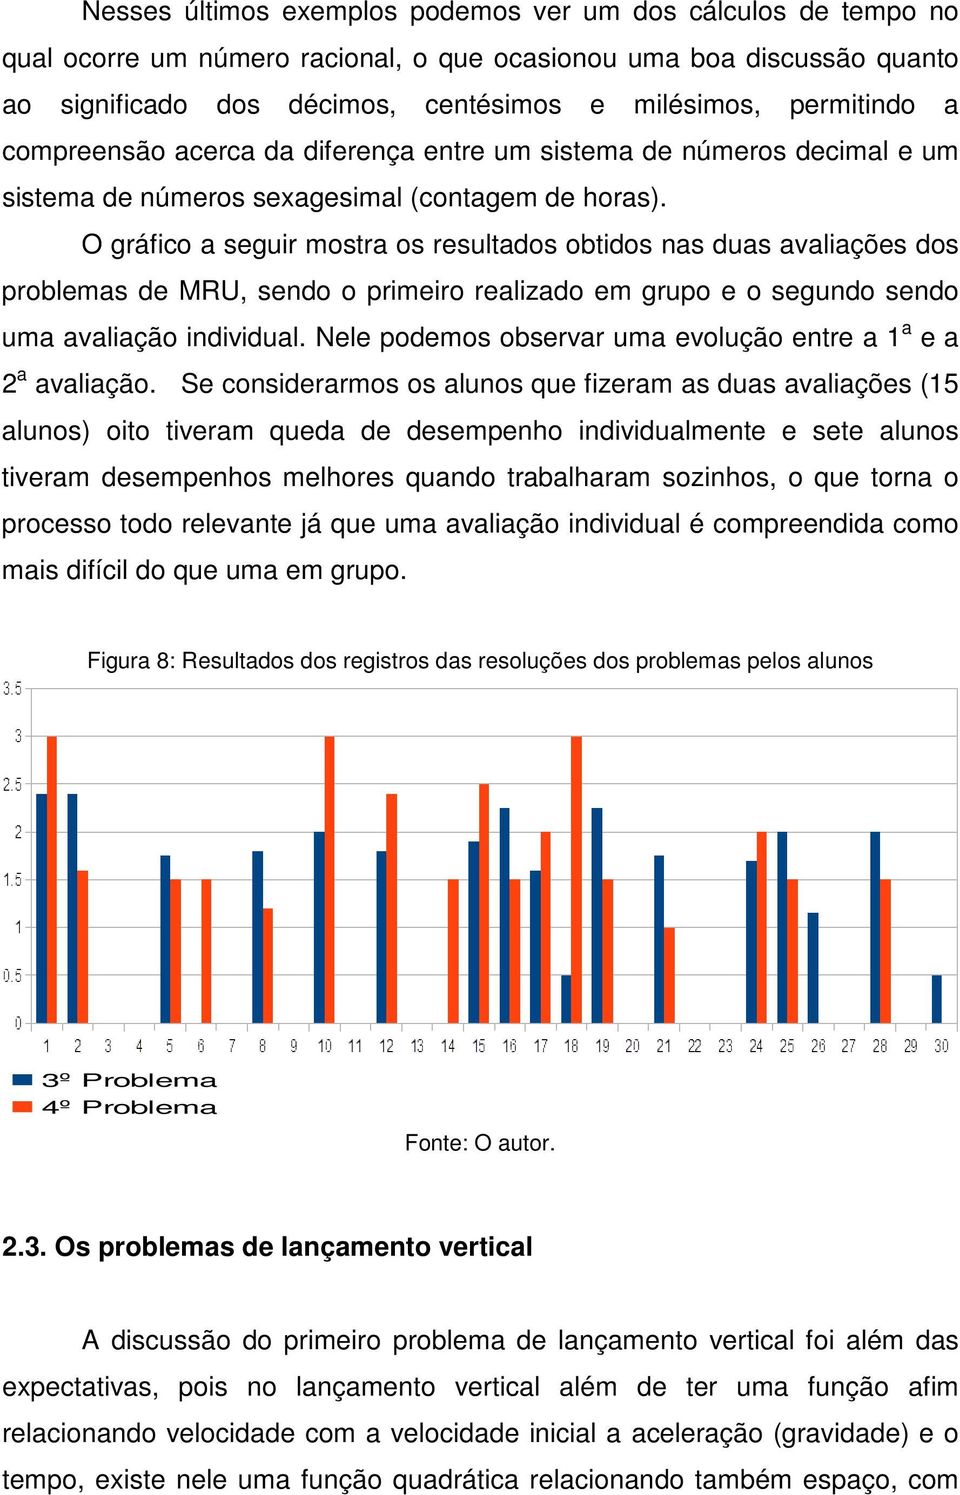 O gráfico a seguir mostra os resultados obtidos nas duas avaliações dos problemas de MRU, sendo o primeiro realizado em grupo e o segundo sendo uma avaliação individual.